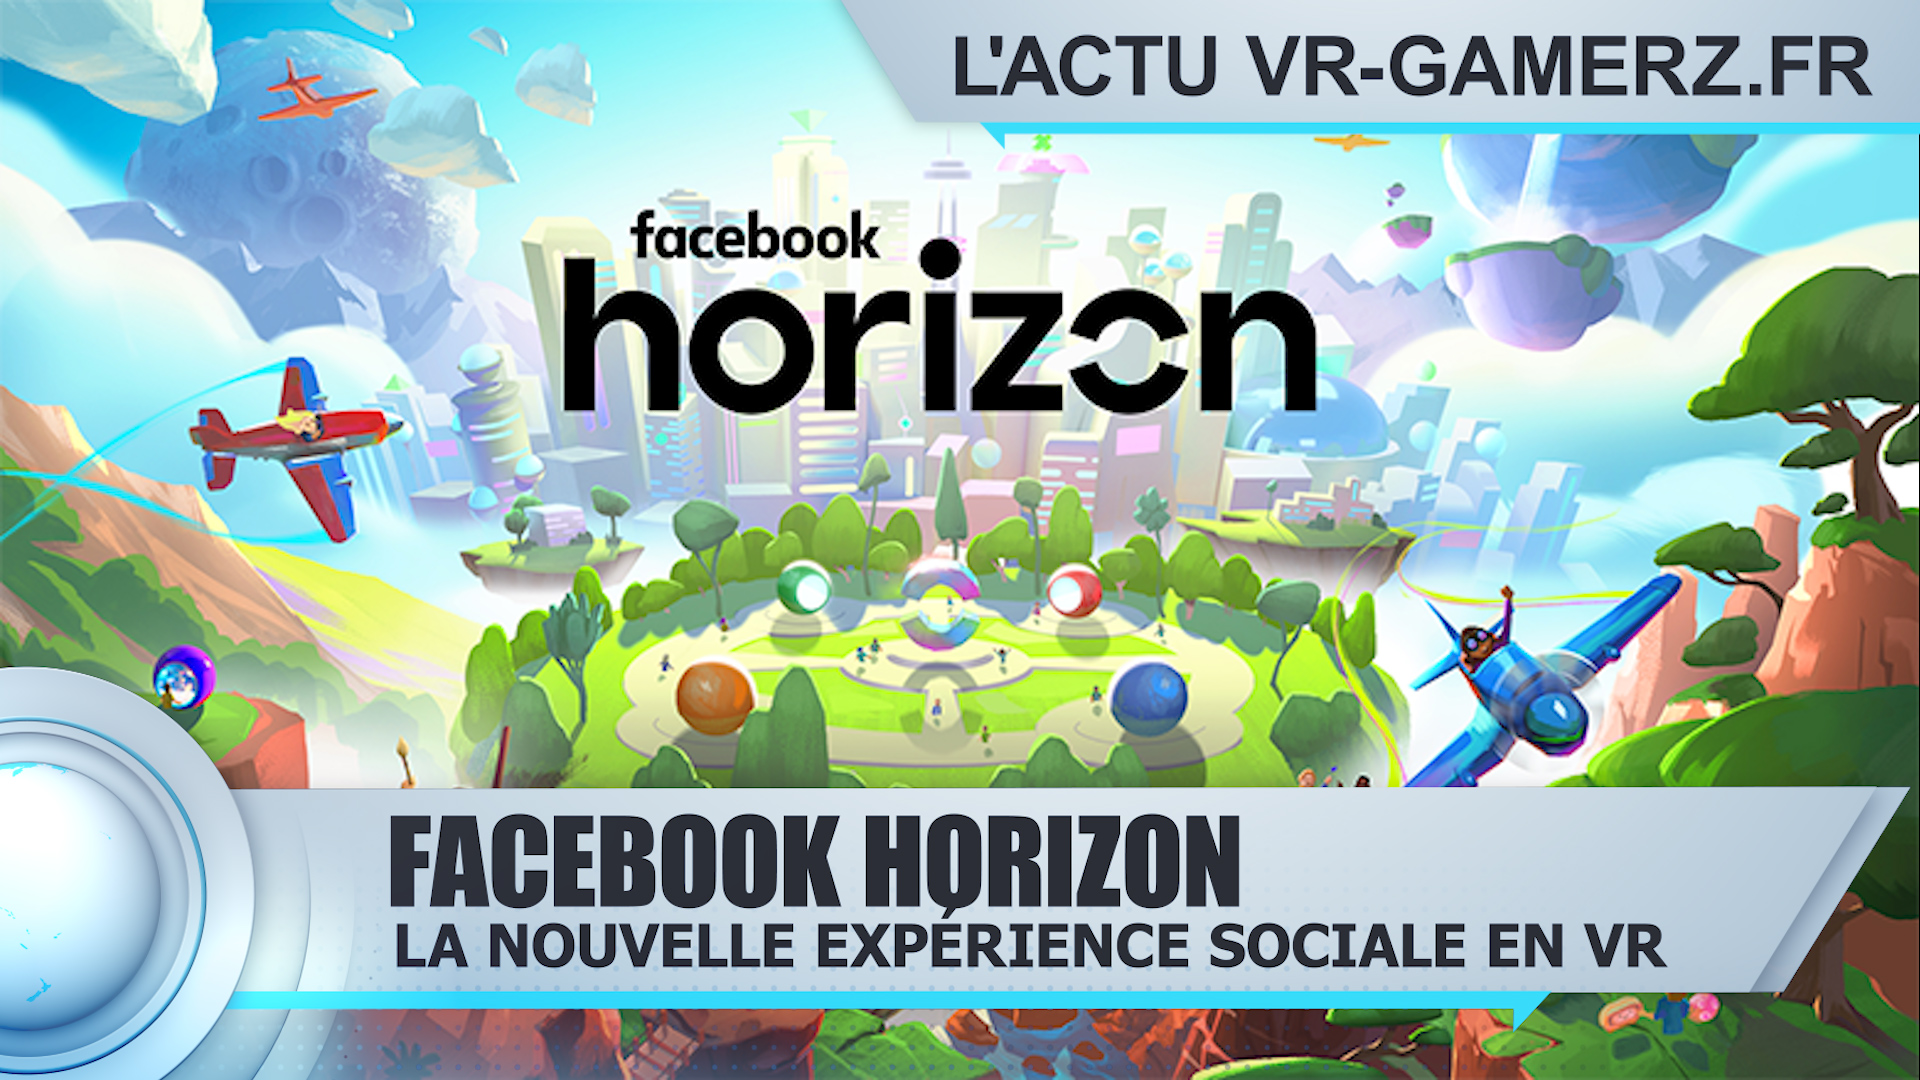 Facebook Horizon Oculus quest : Découvrez la nouvelle expérience sociale de Facebook